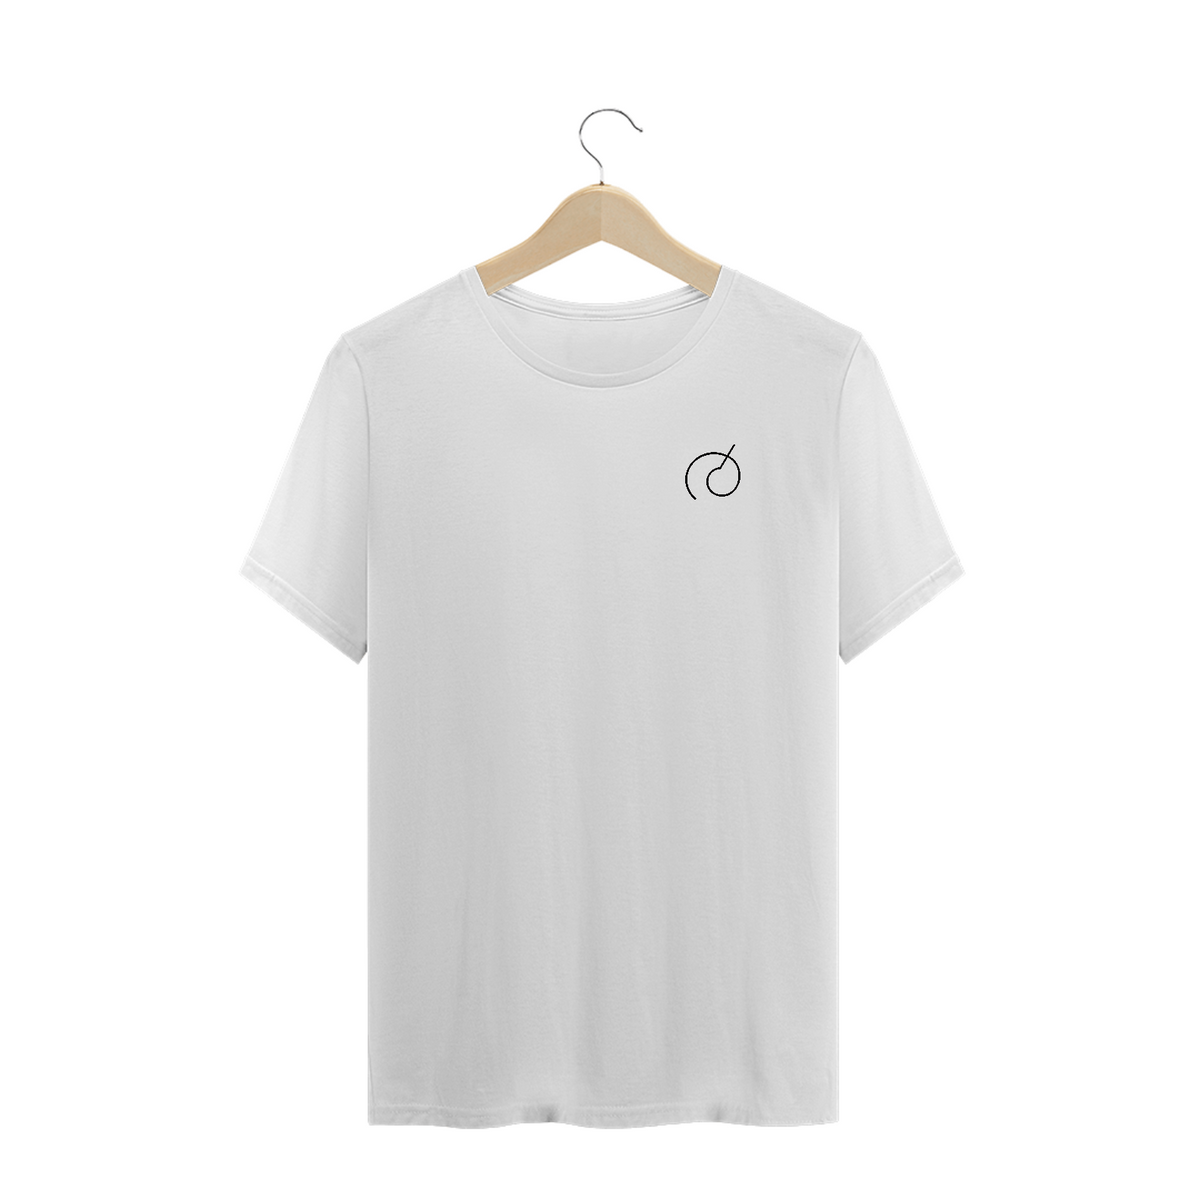 Nome do produto: camiseta plus size símbolo whis